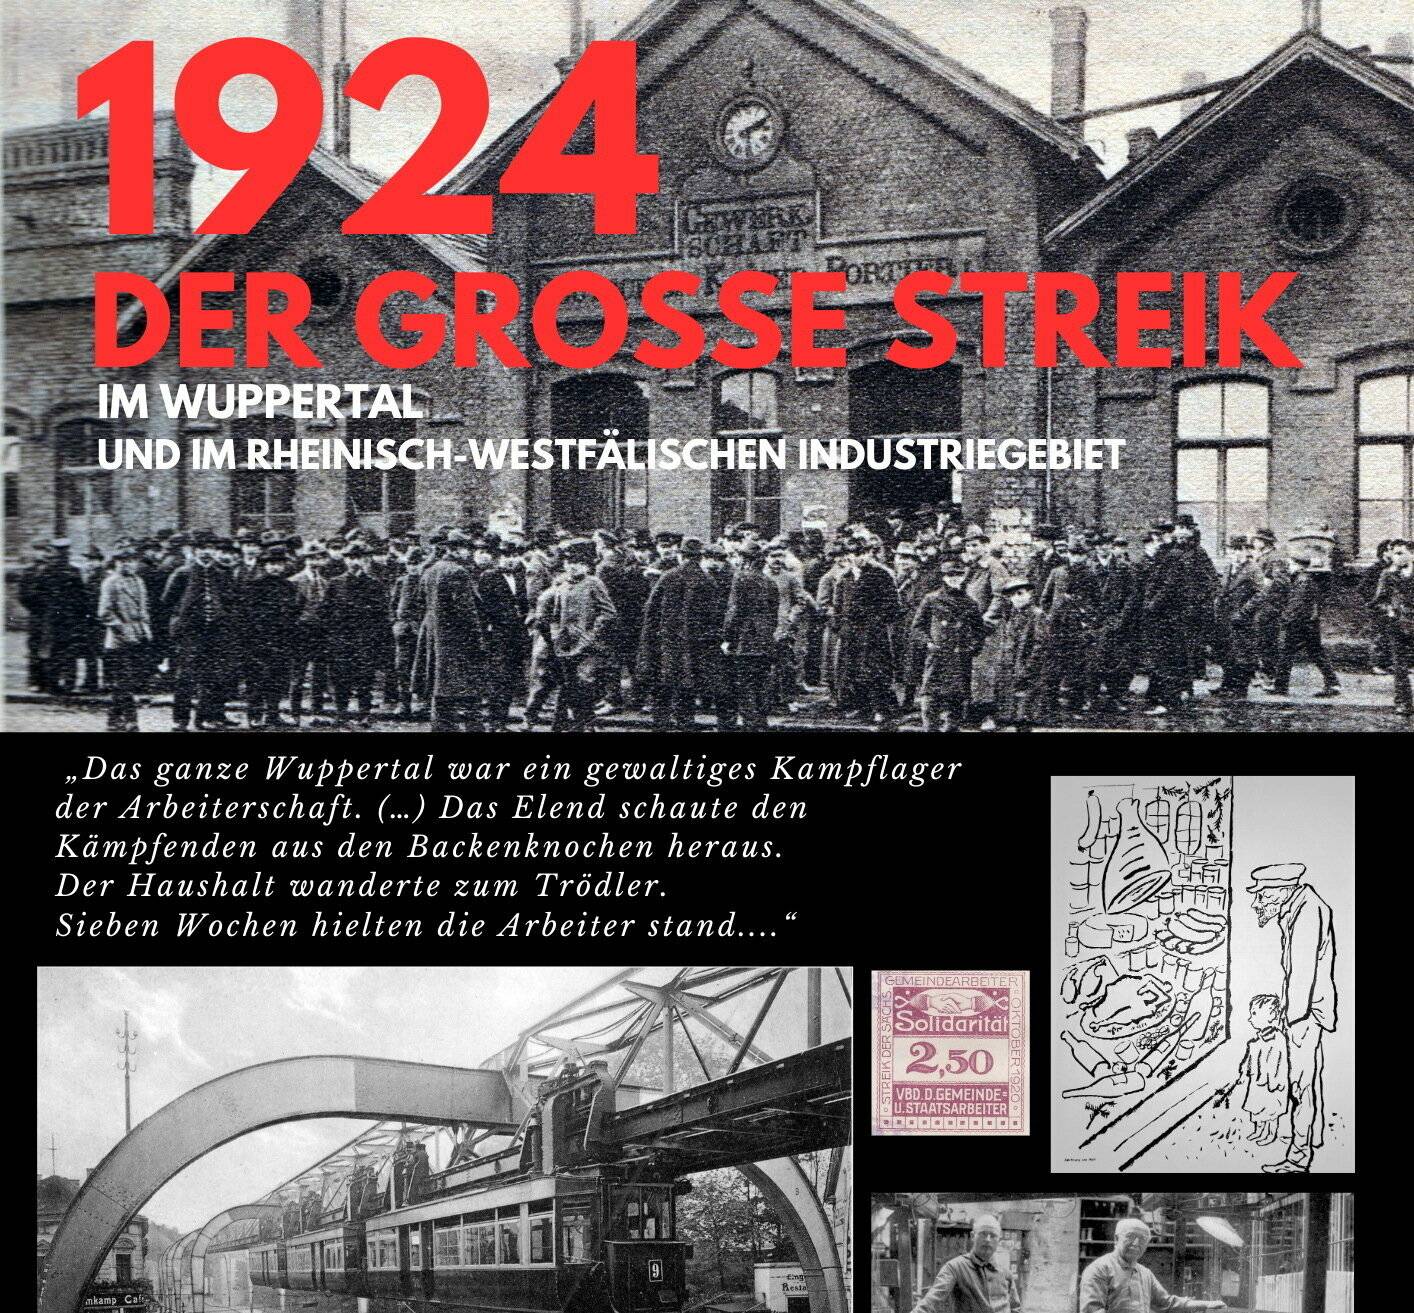 Die Ausstellung "1924  der große Streik"